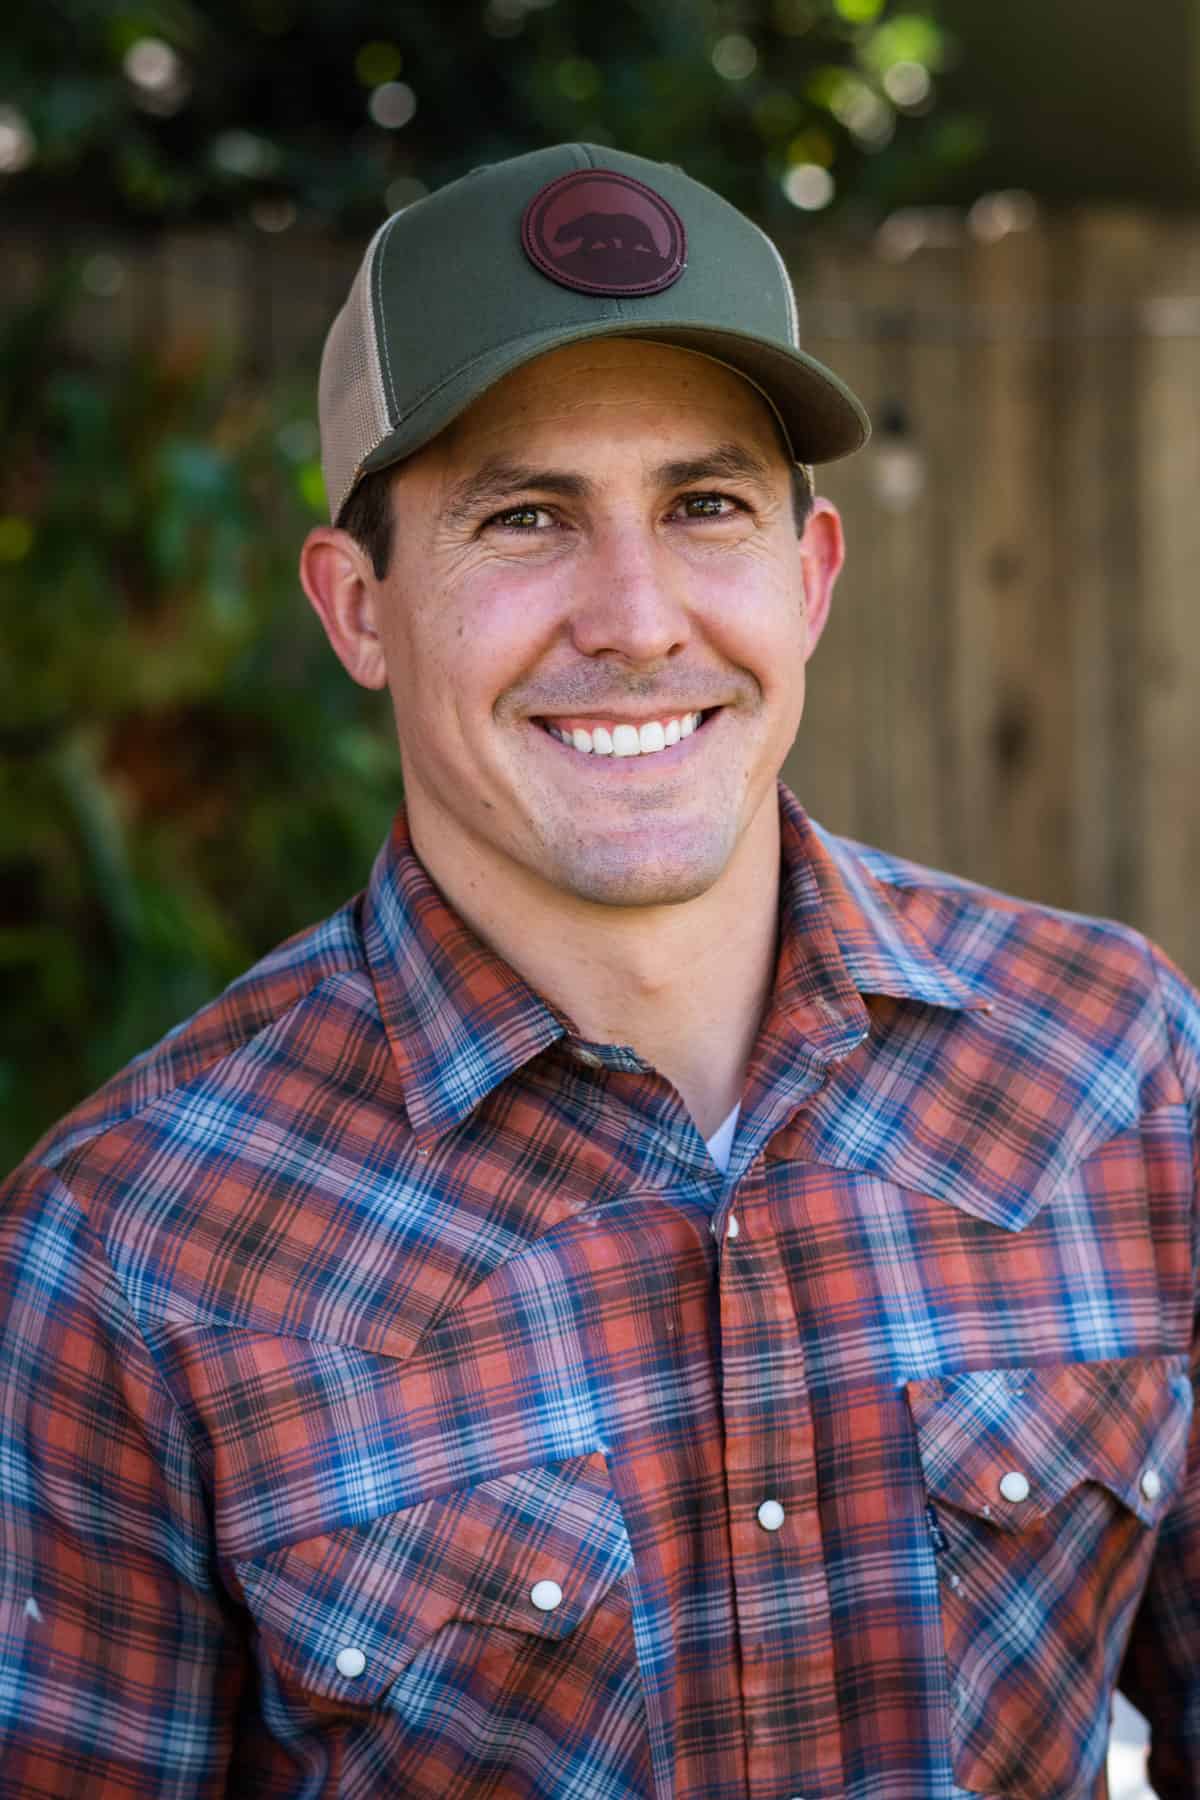 Meet a Farmer: Kyle Hagerty of Urban Farmstead